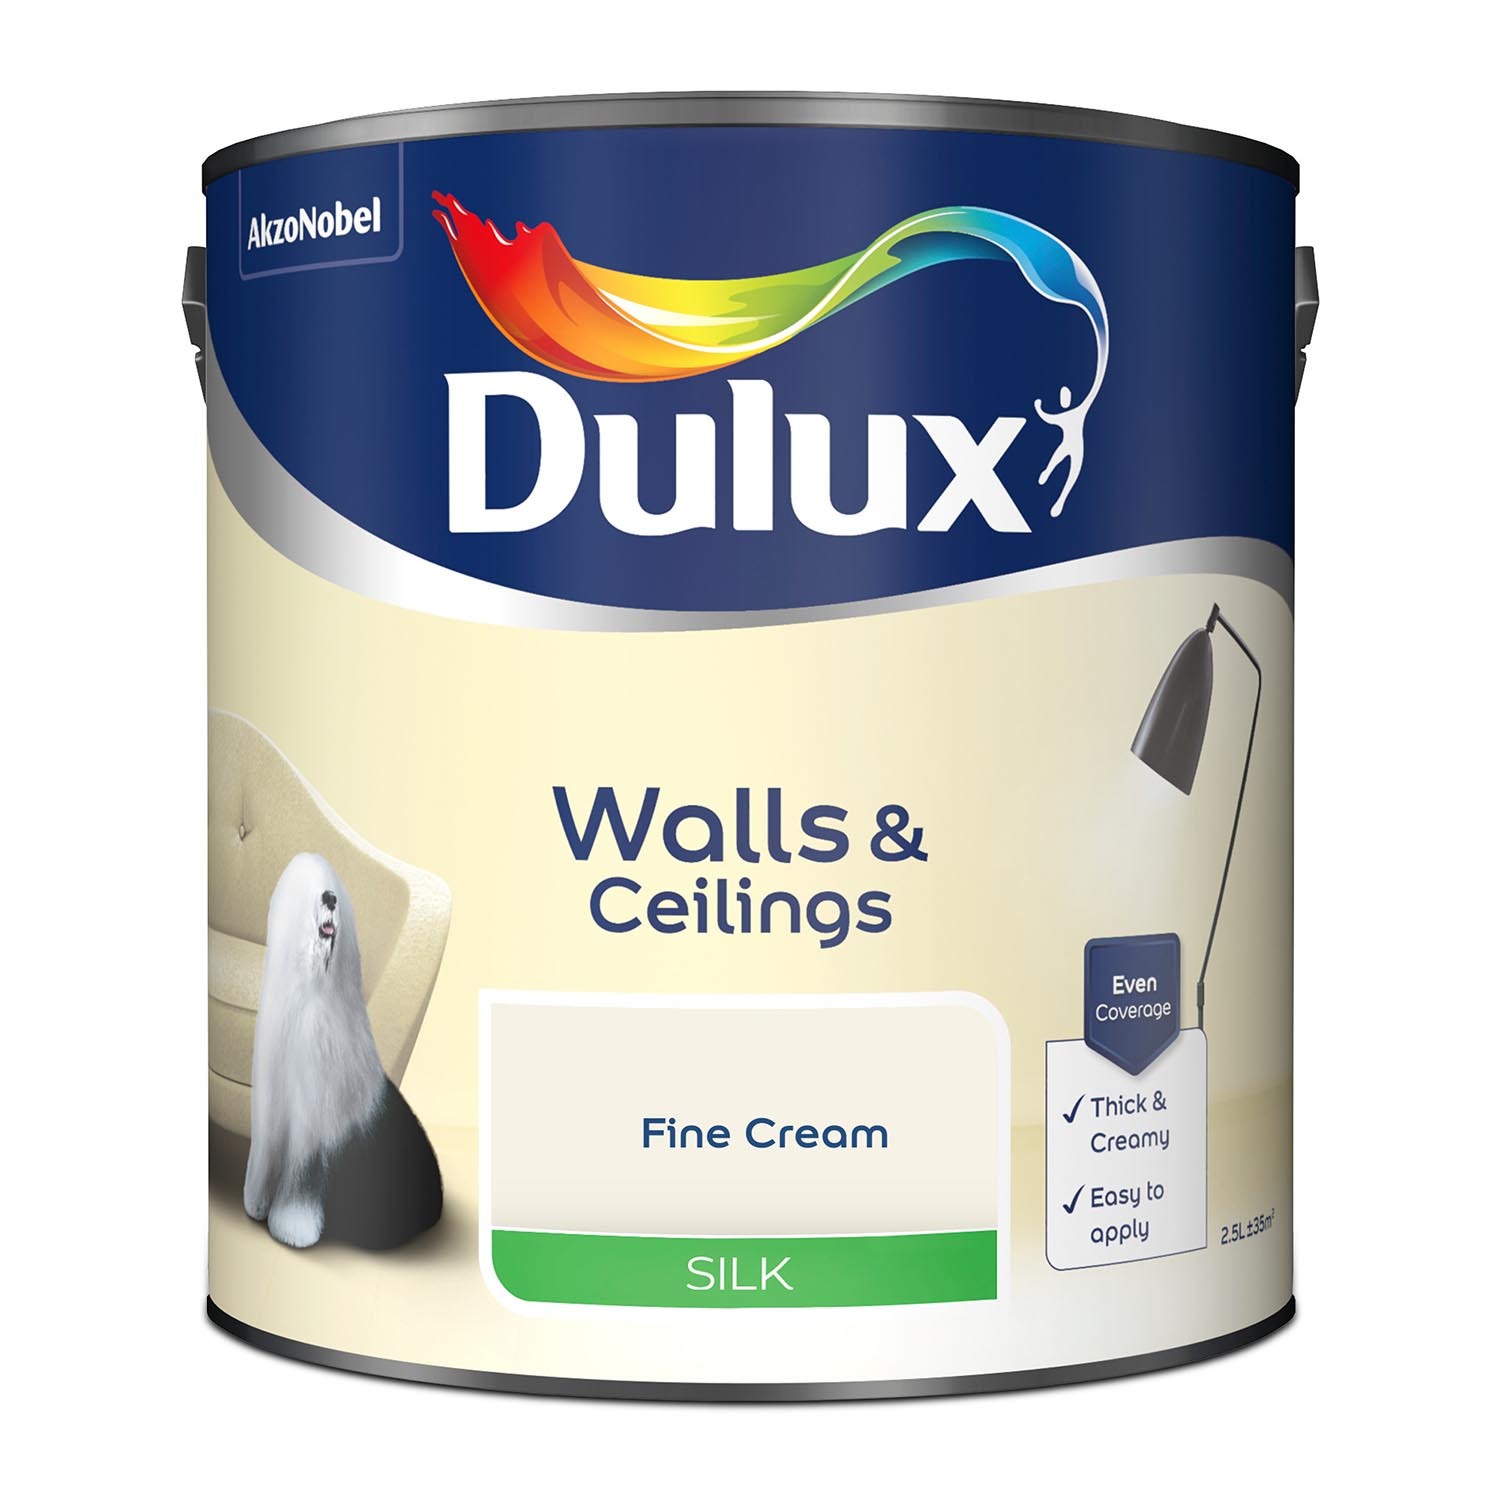 Dulux Walls & Ceilings Fine Cream Silk Emulsion Paint 2.5L Image 2